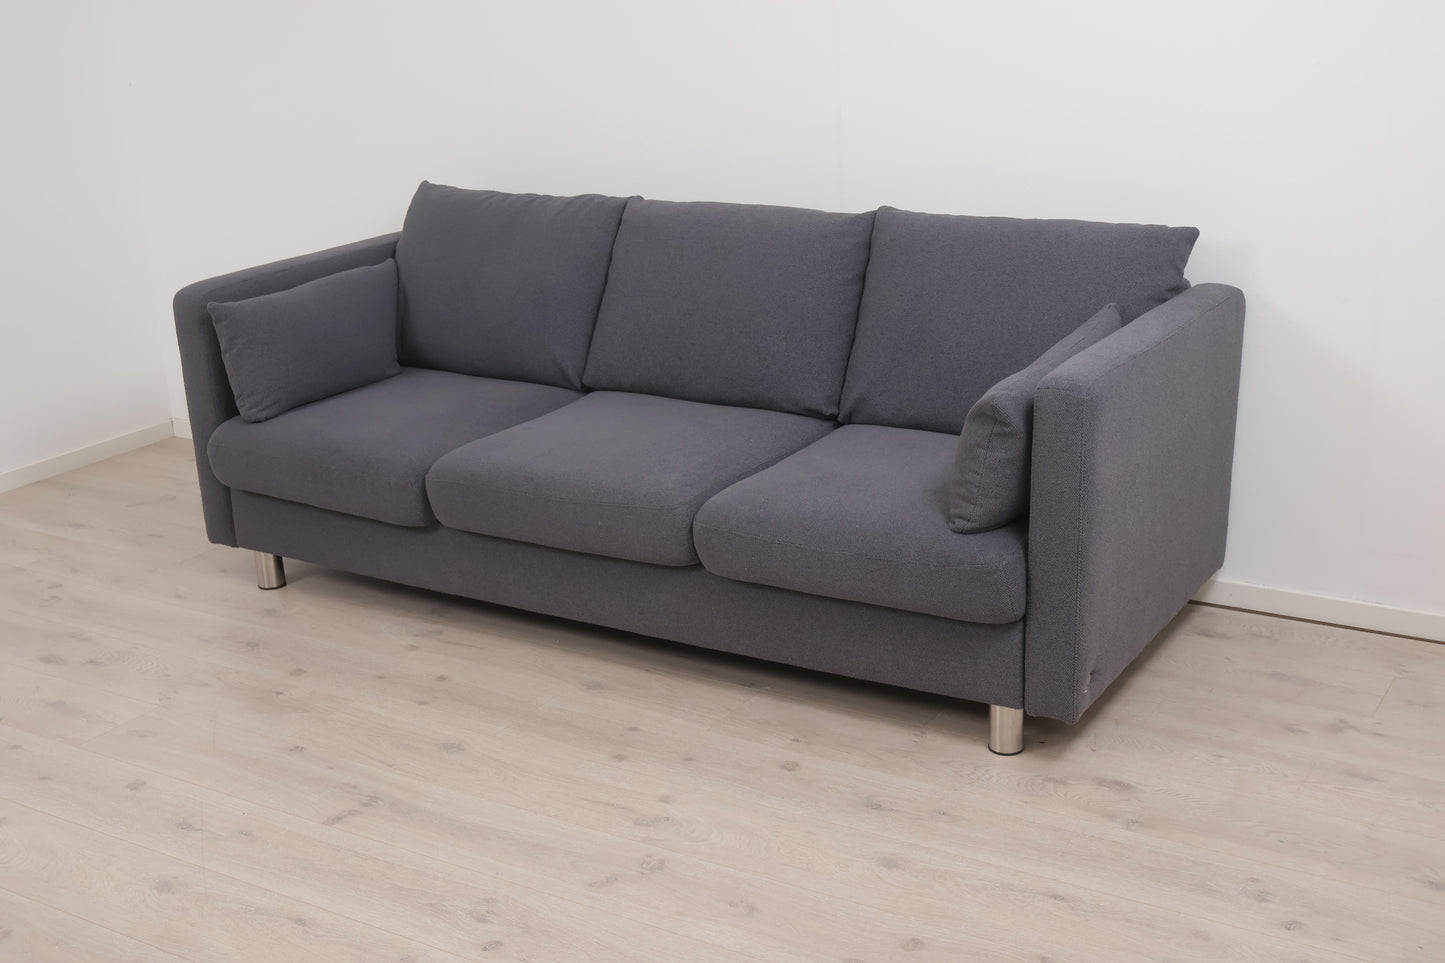 Nyrenset | Mørk grå Ekornes Stressless E400 3-seter sofa